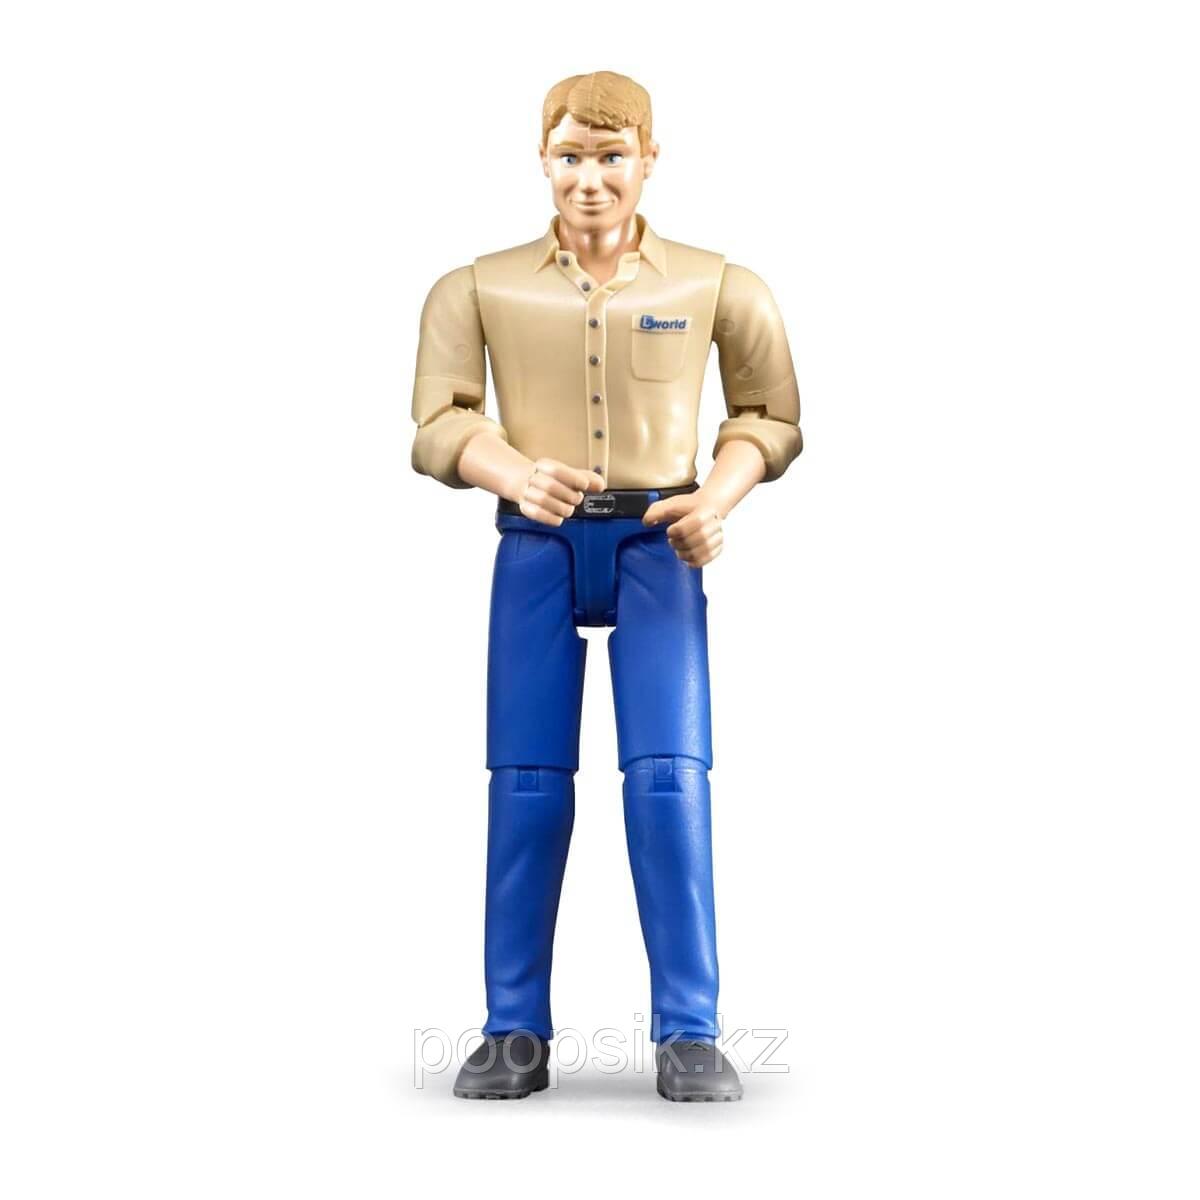 Фигурка мужчины голубые джинсы Bruder, 60-006